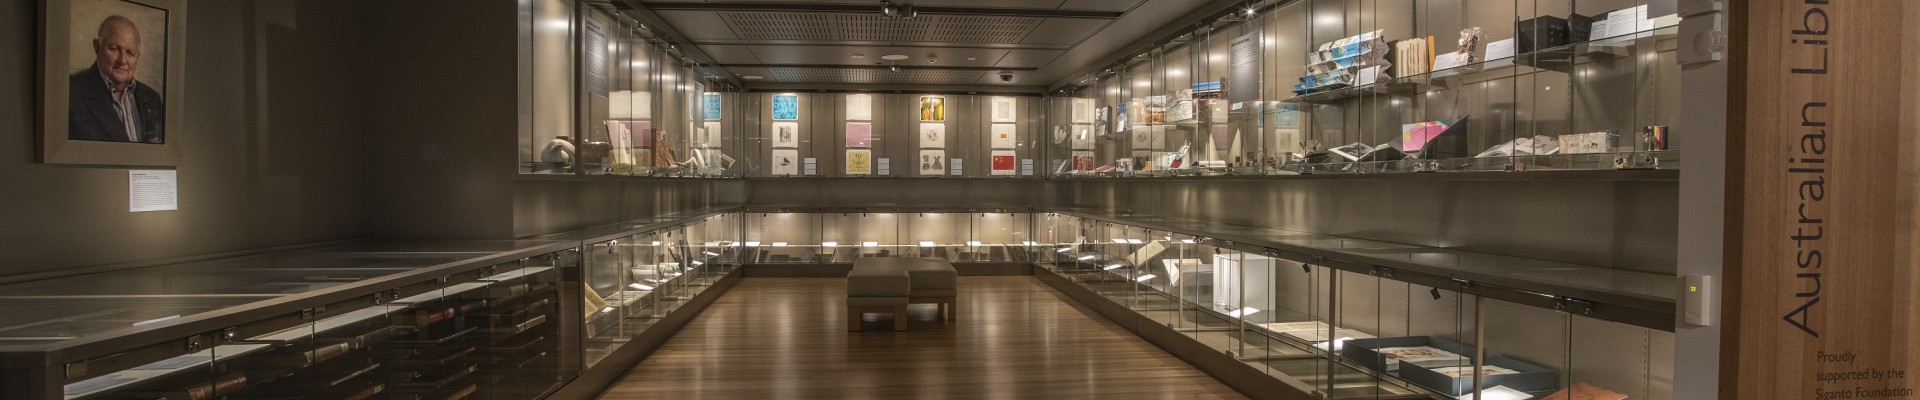 Australian Library of Art Showcase level 4